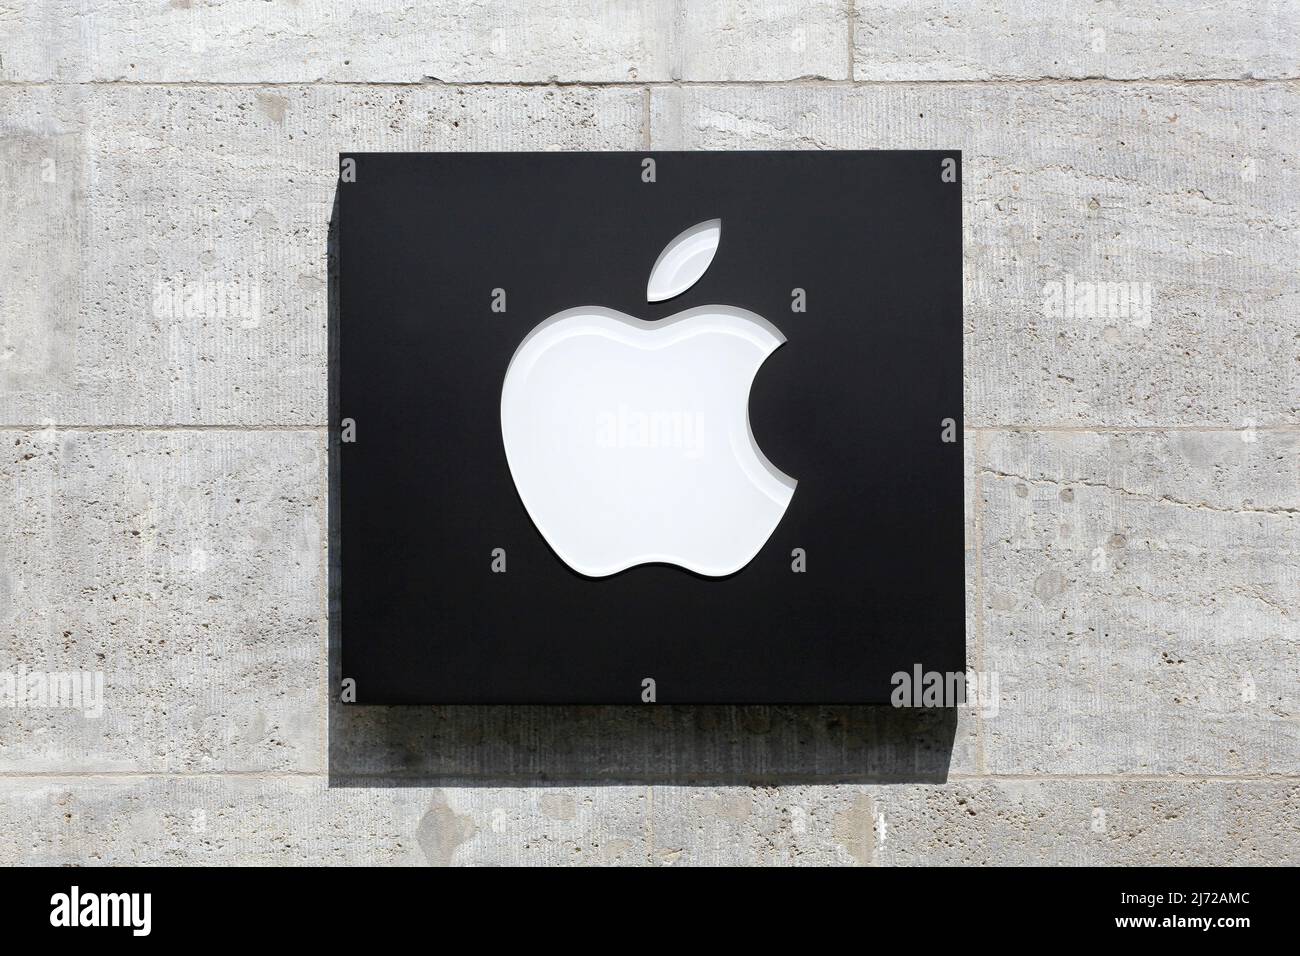 Berlin, Allemagne - 13 juillet 2020 : Apple est une entreprise américaine de technologie multinationale qui conçoit, développe et vend des produits électroniques grand public Banque D'Images